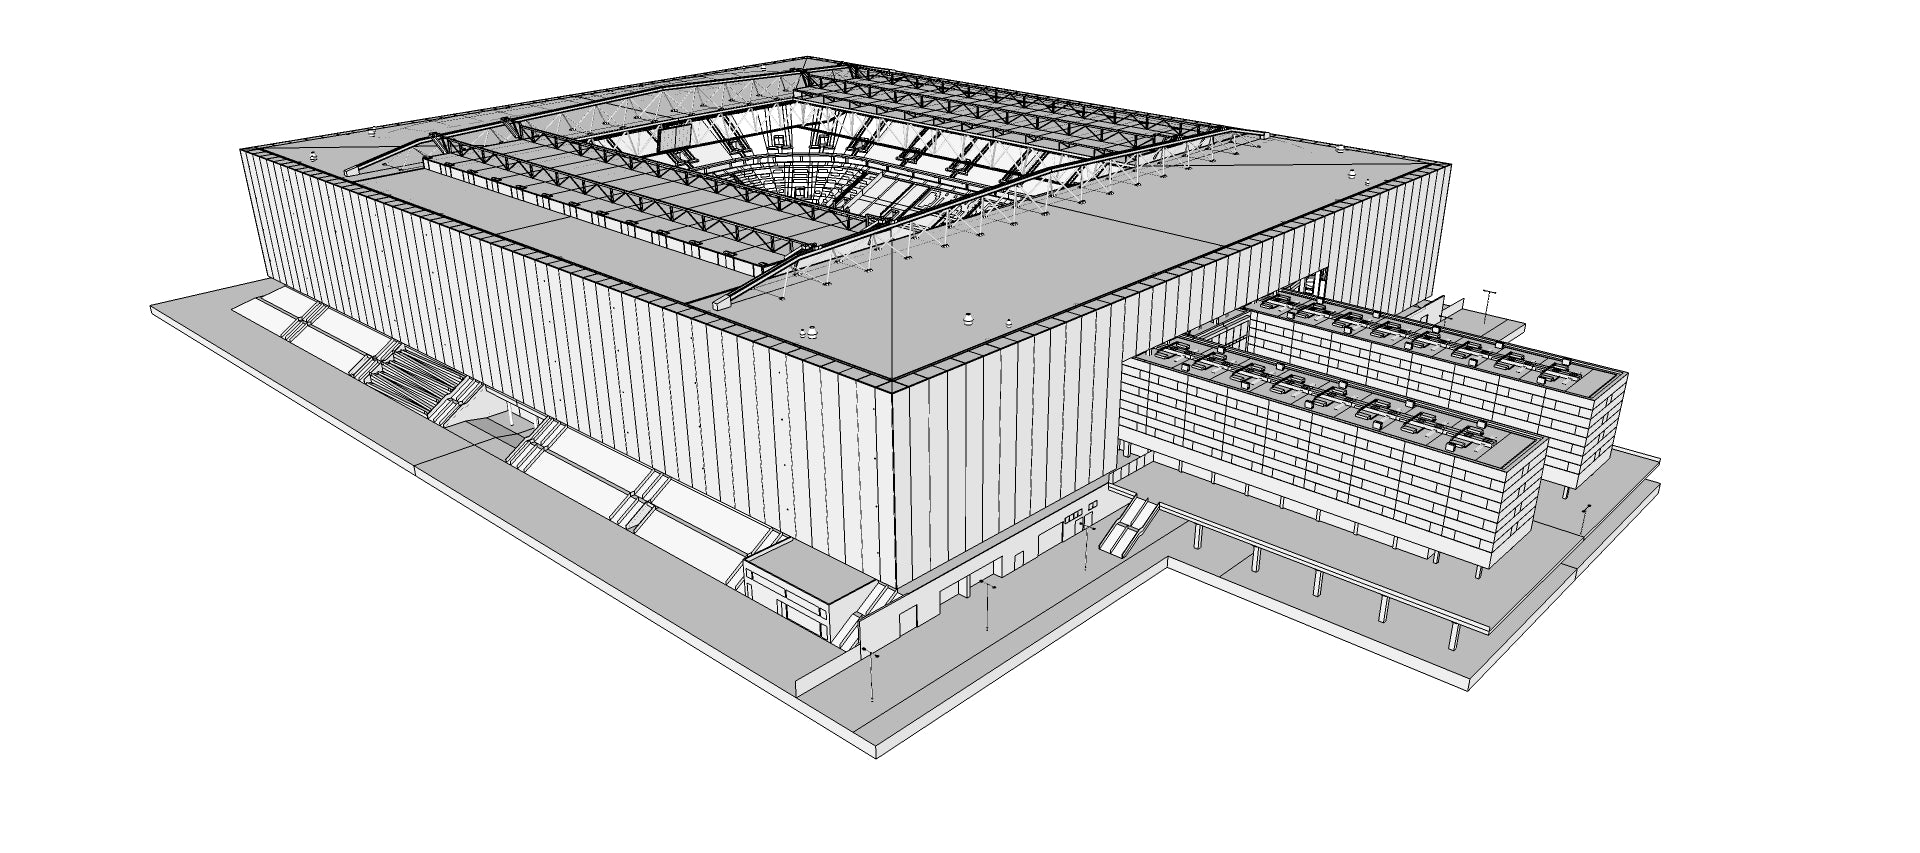 Fortuna Düsseldorf functional building plans - Coliseum